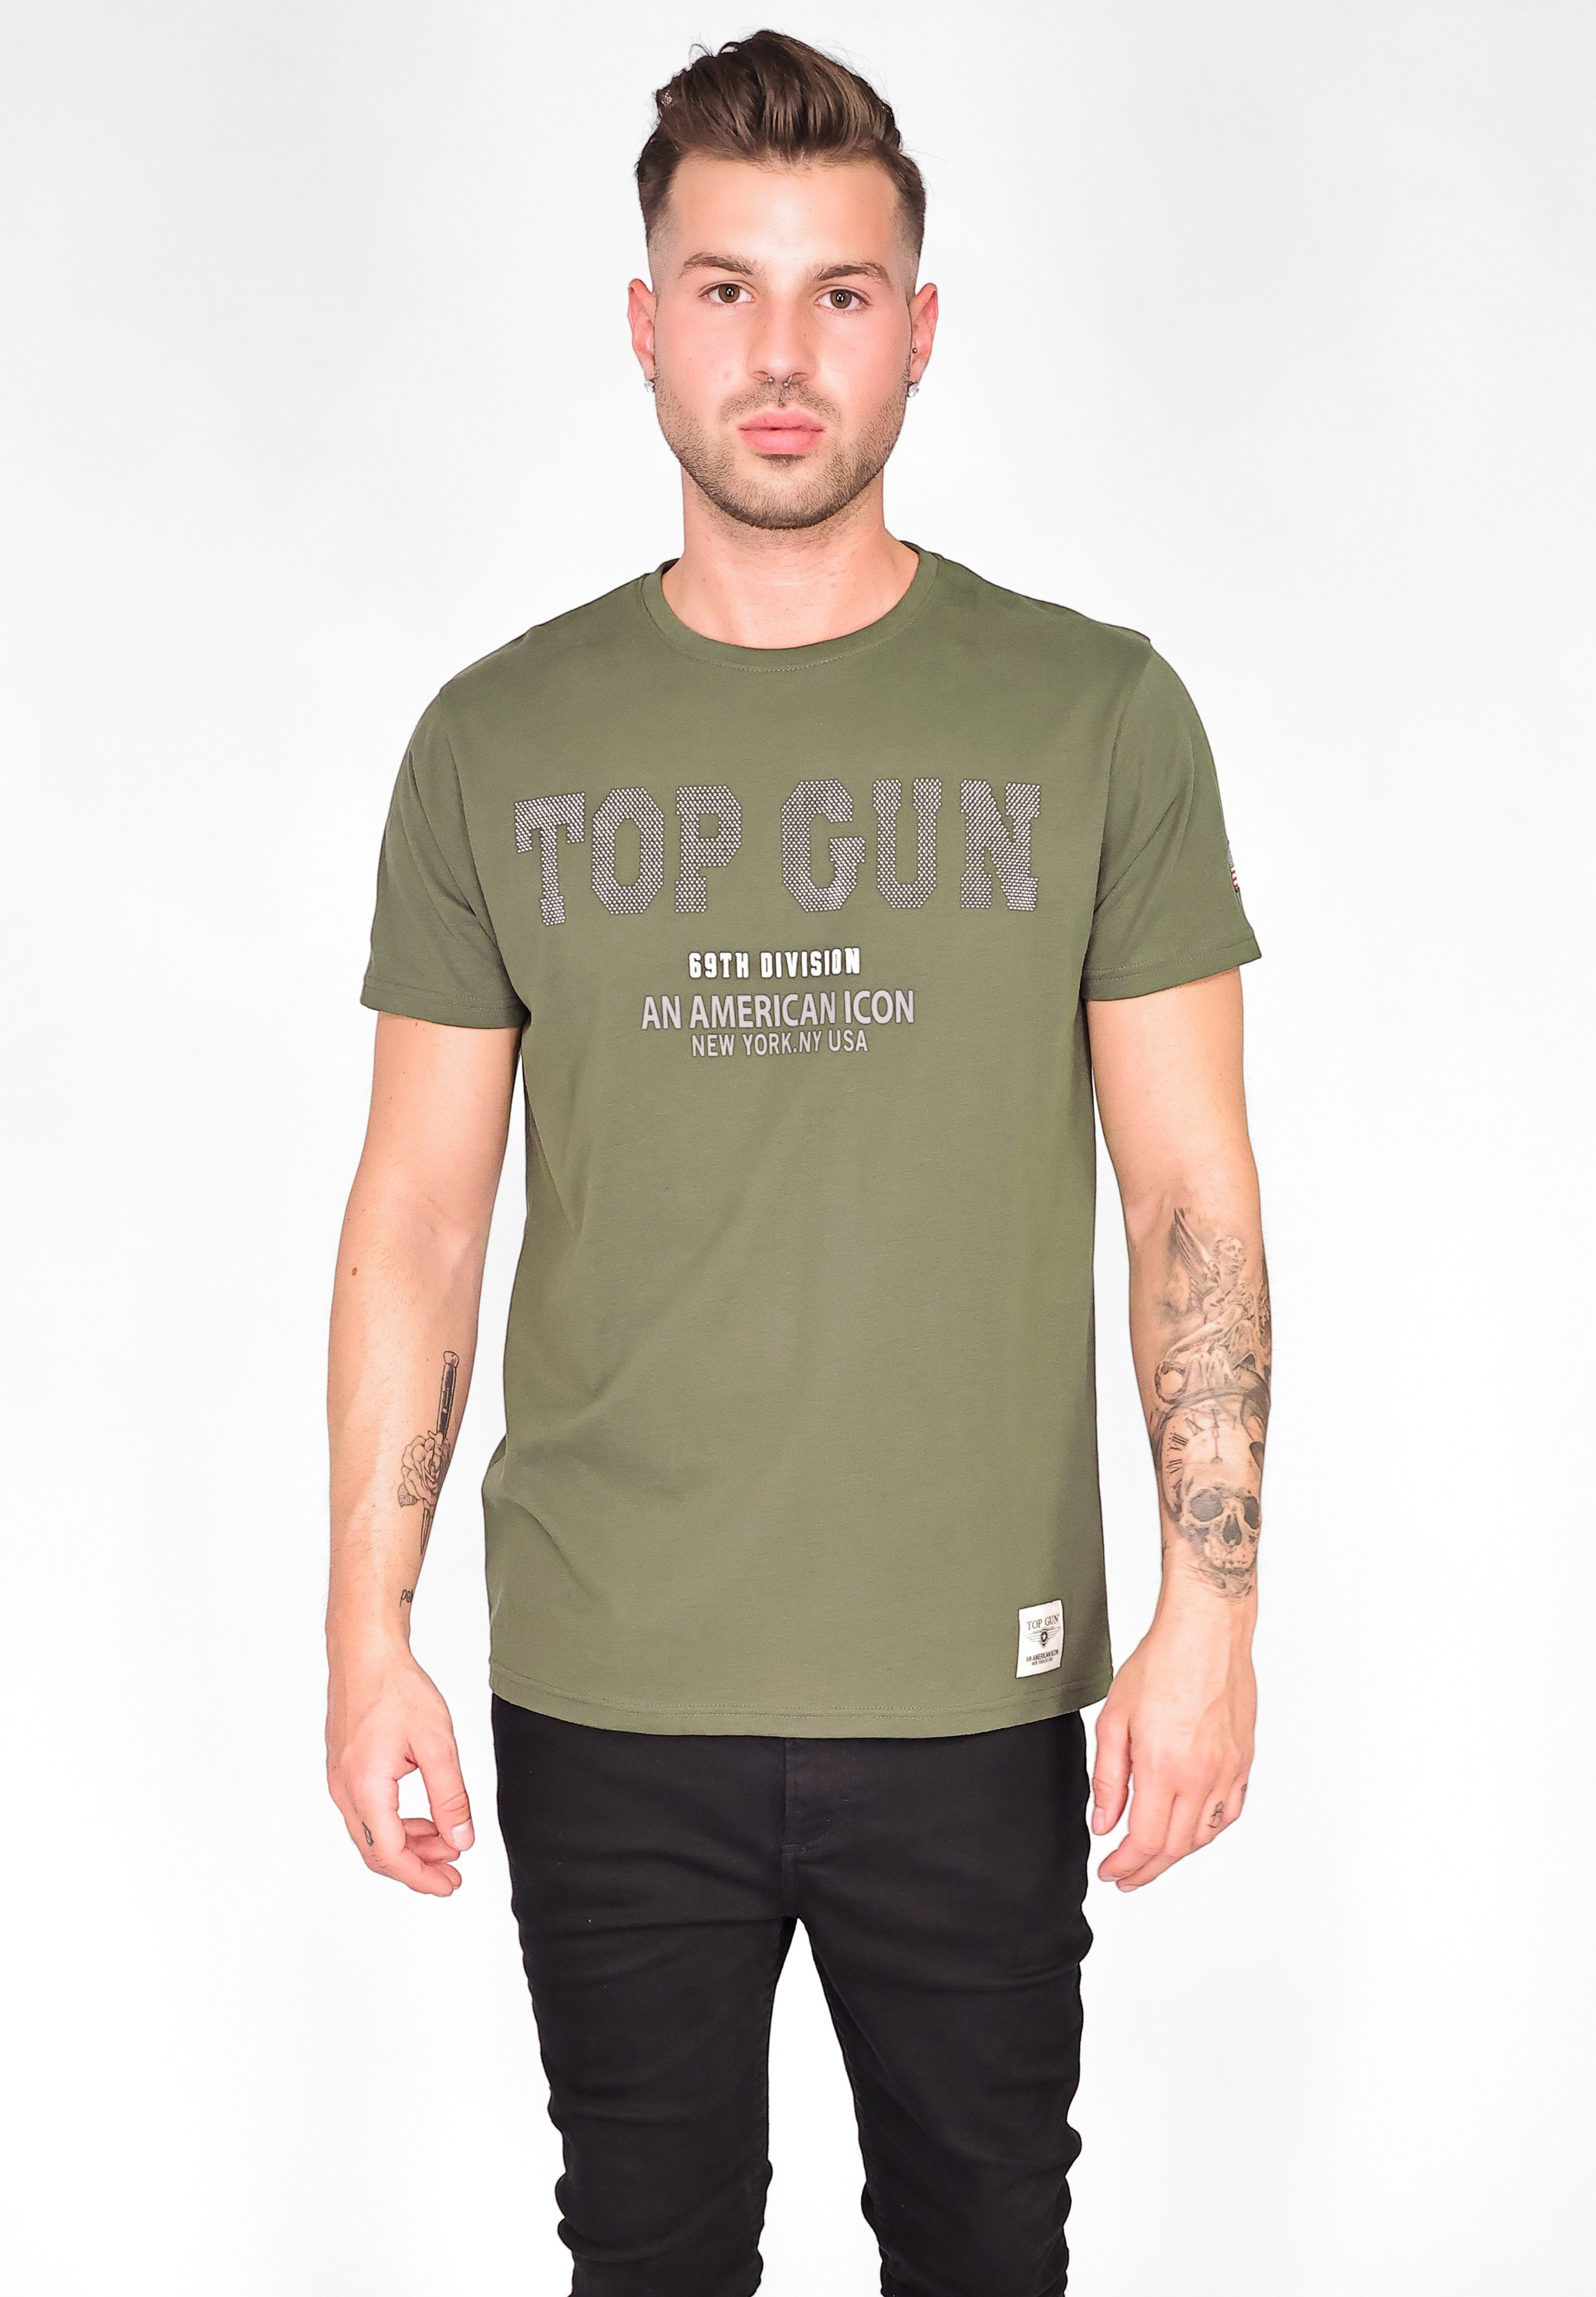 TOP GUN T-Shirt »T-Shirt TG20213006« bei ♕